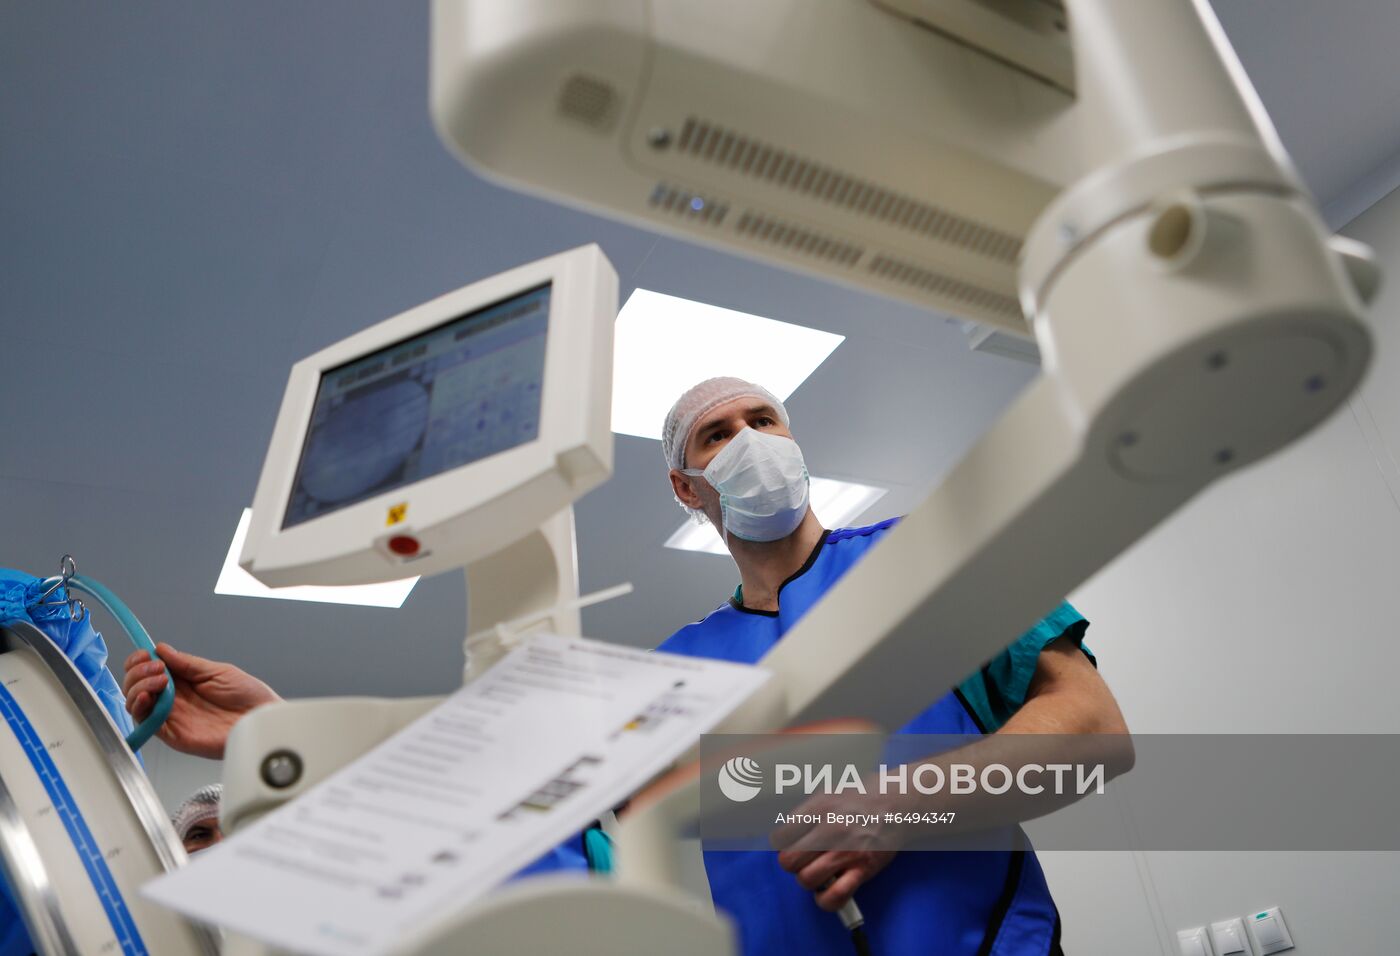 Ортопедическая операция в больнице г. Белгорода